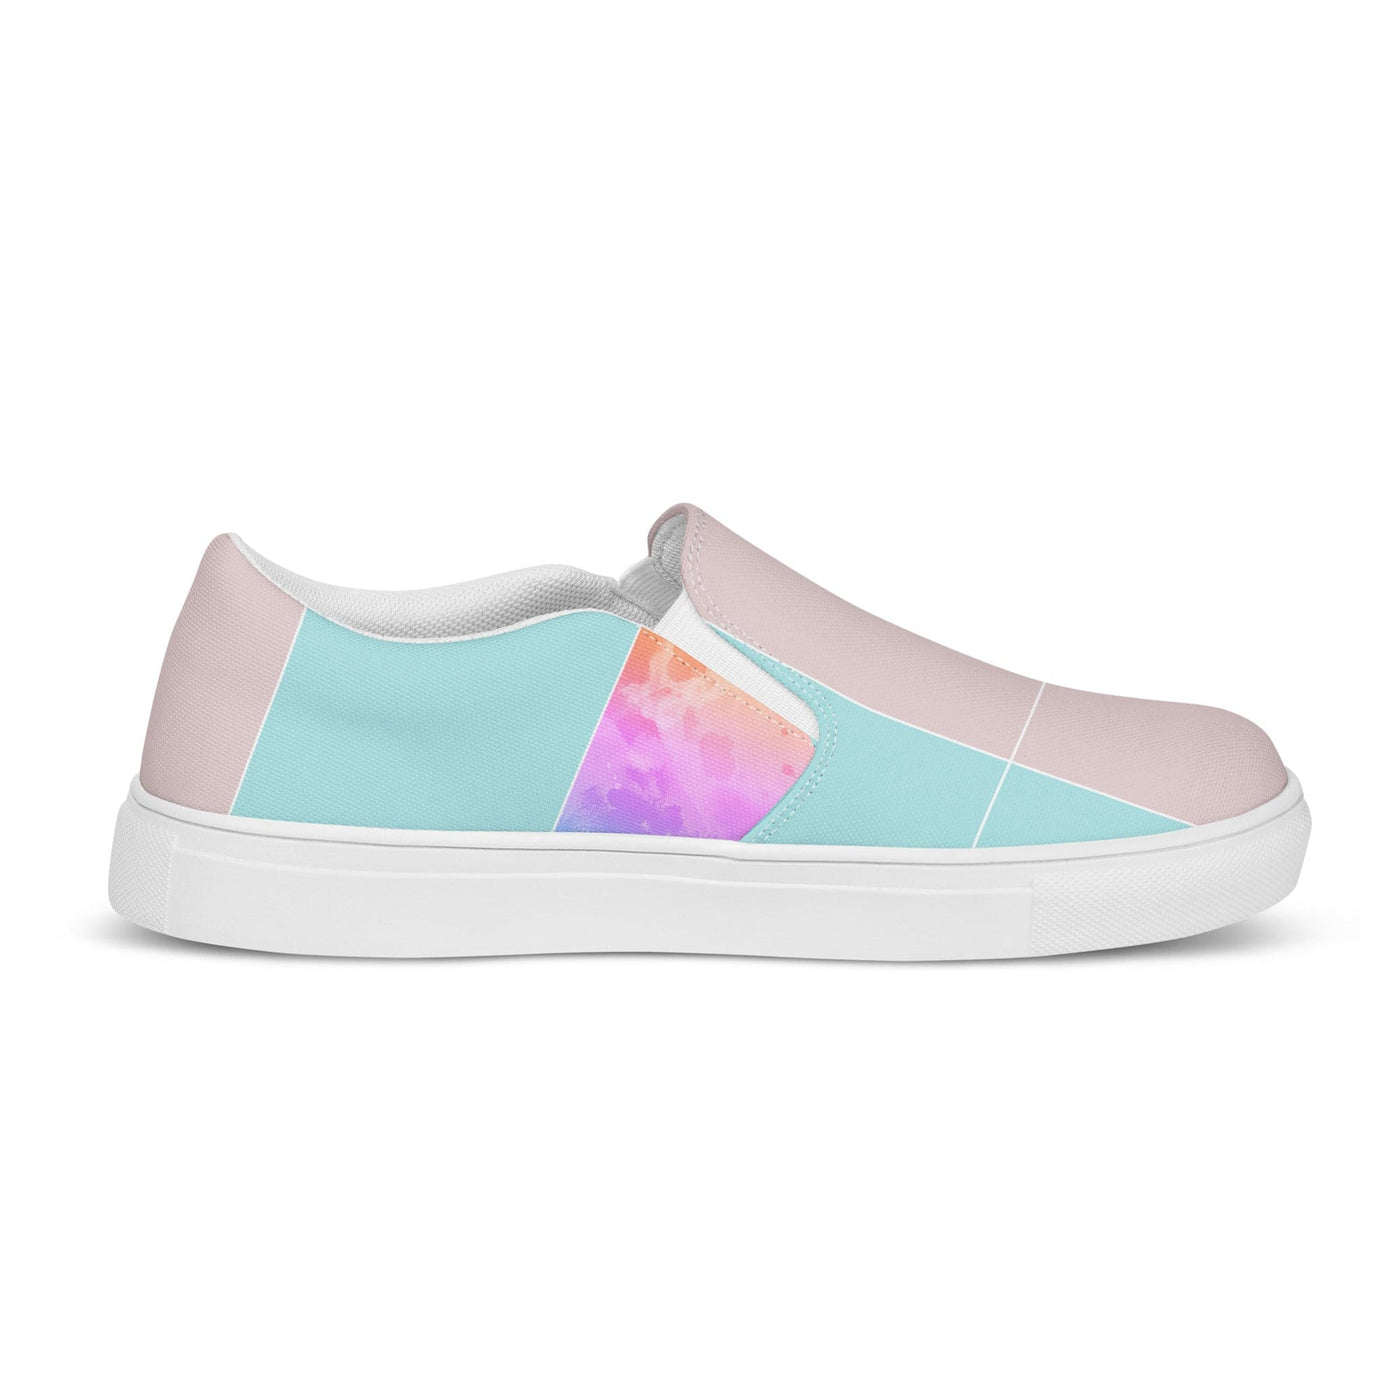 Women’s Slip-on Canvas Shoes Pastel Colorblock Watercolor Illustration